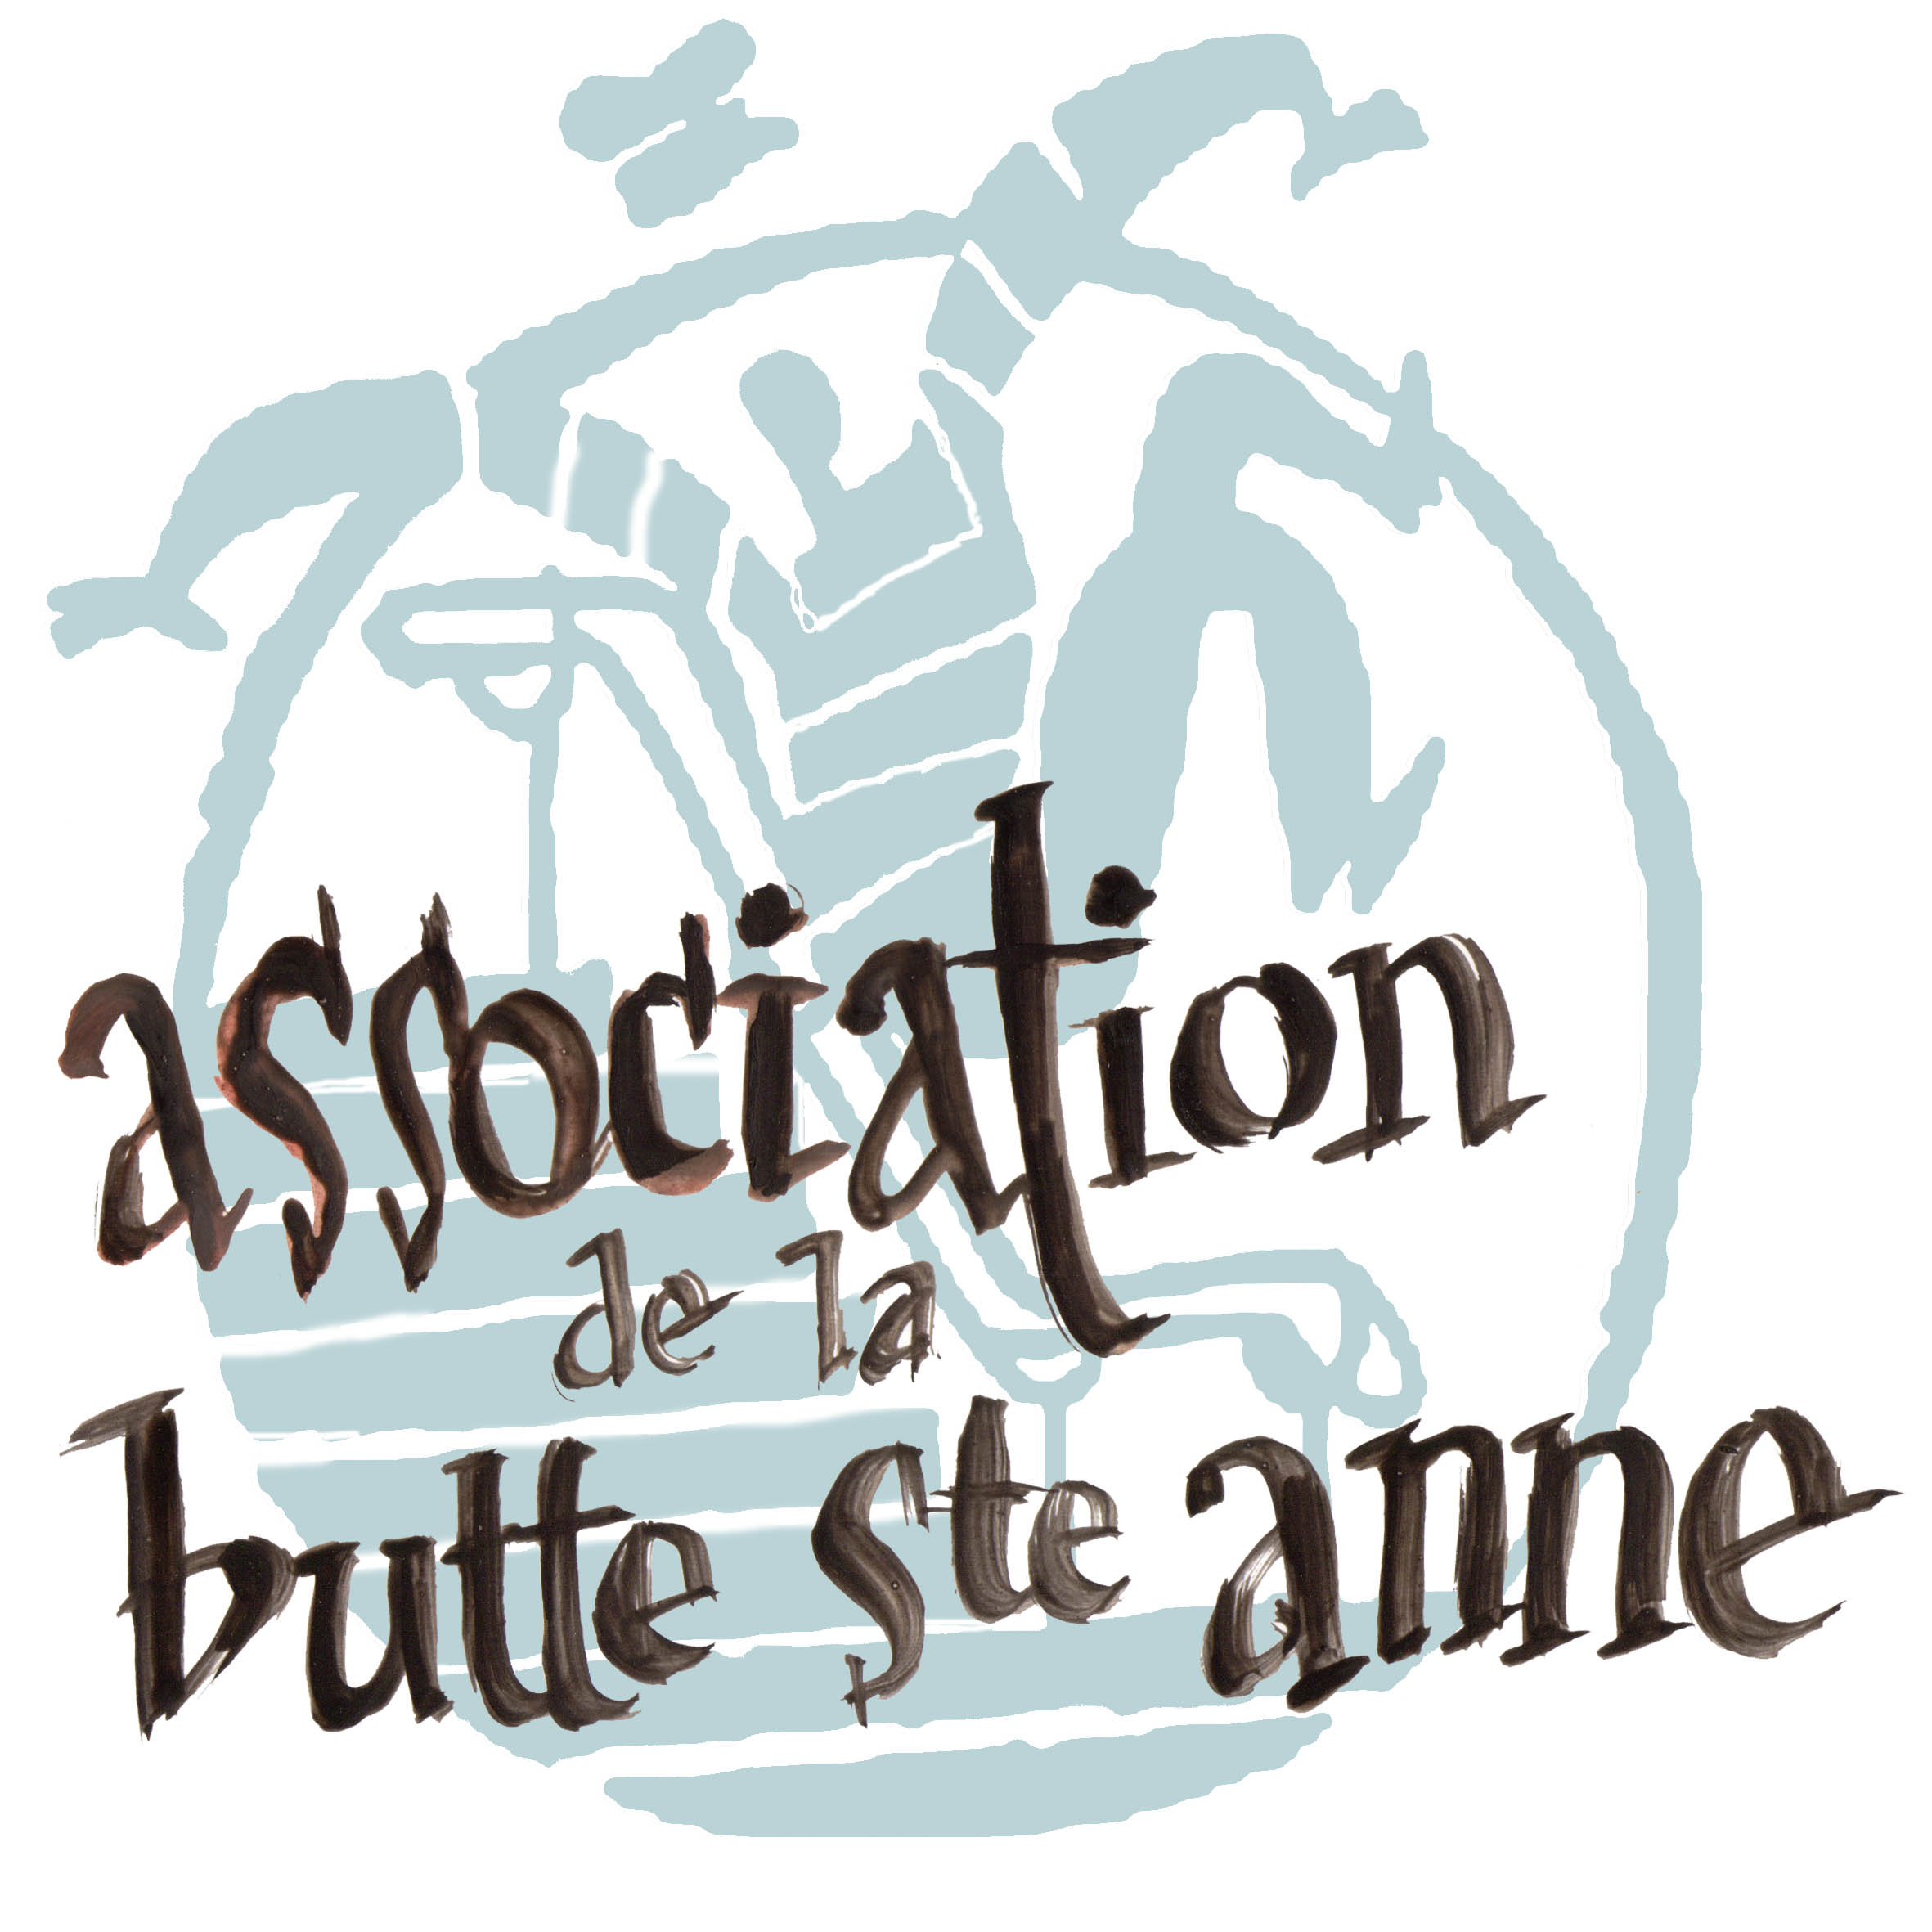 Association de la Butte Saint-Anne